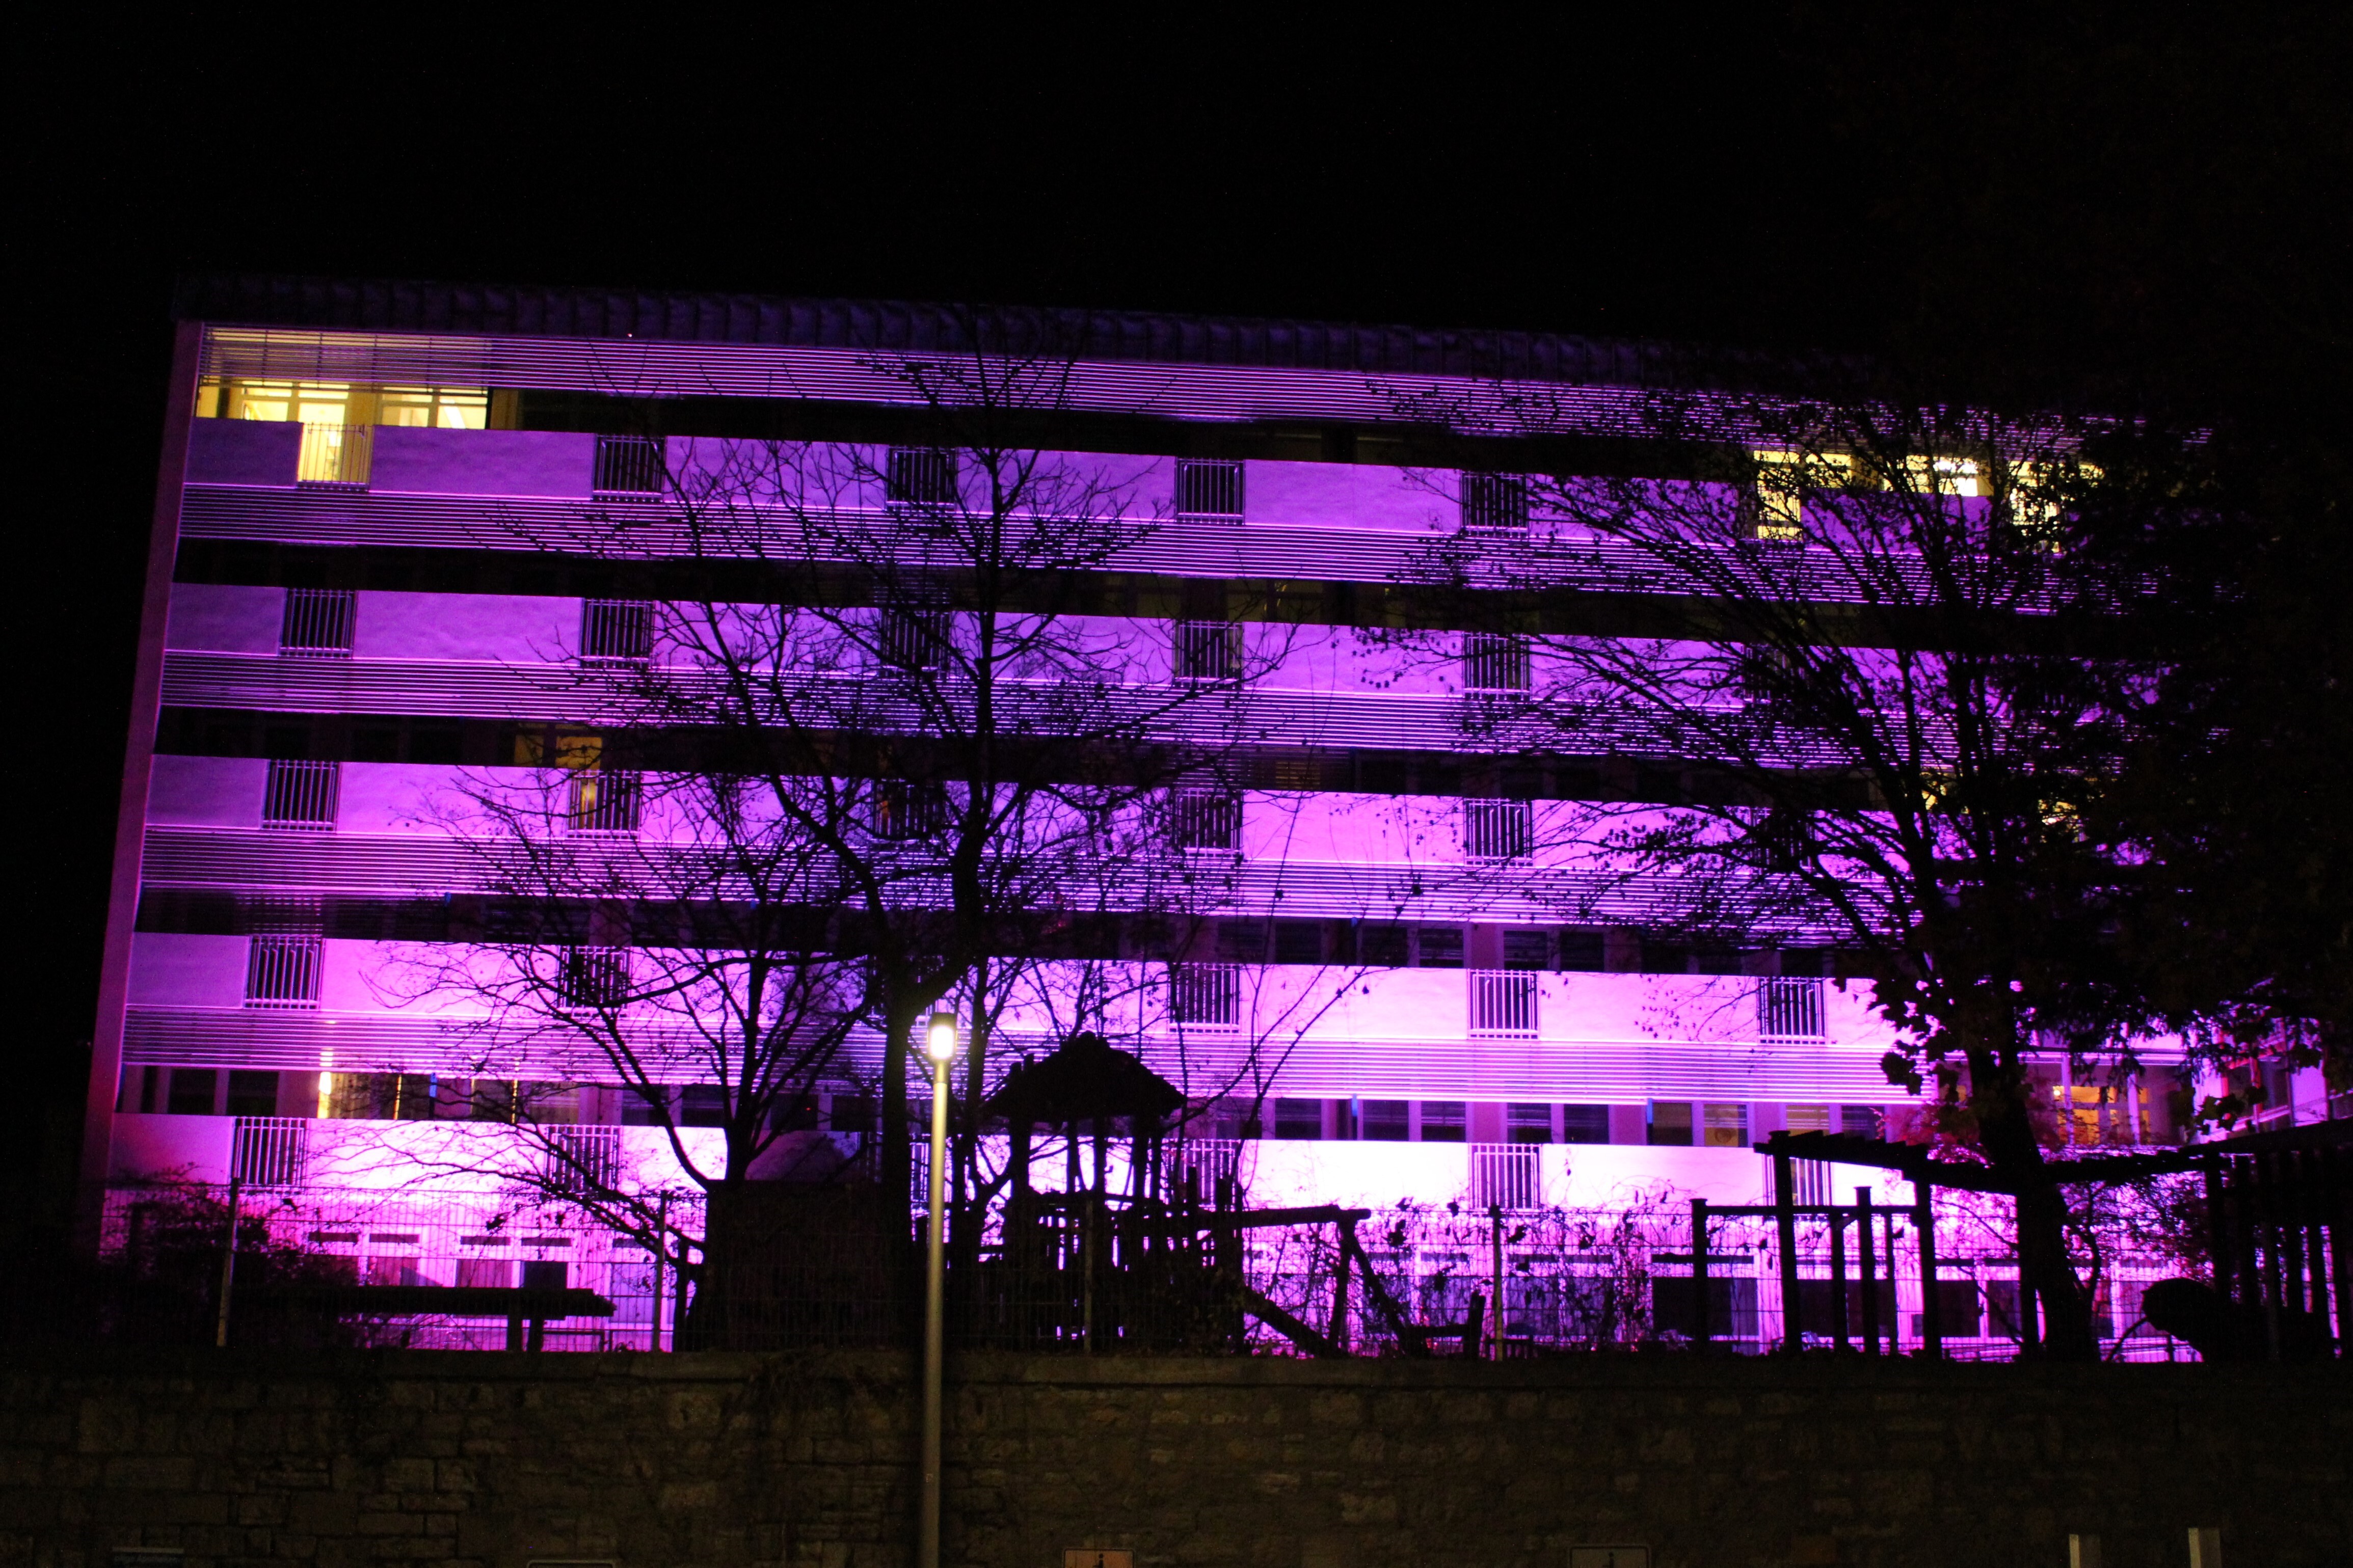 Weltfrühgeborenentag an der Uniklinik Würzburg: Violett beleuchtetes Gebäude